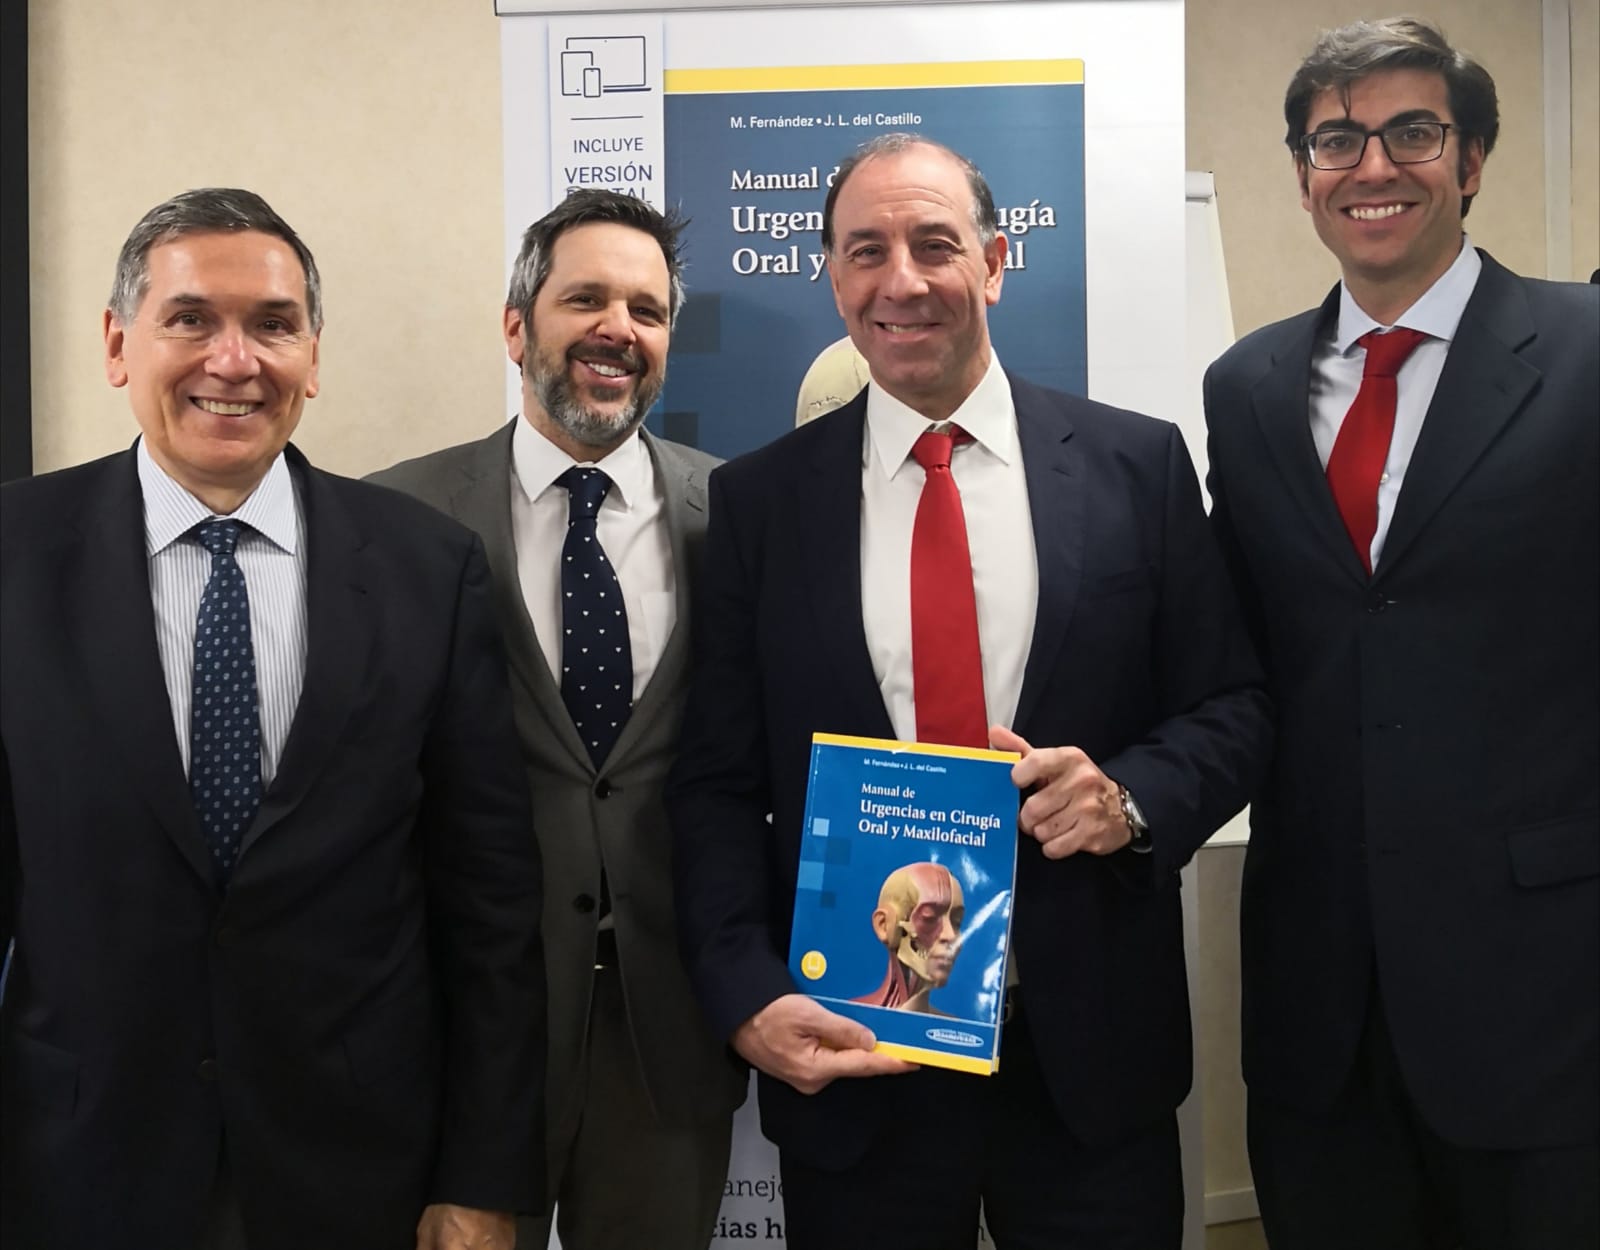 Los autores del “Manual de Urgencias en Cirugía Oral y Maxilofacial”, M. Fernández y J. L. del Castillo, presentaron la obra el pasado 18 de marzo en el Hospital HM Montepríncipe.